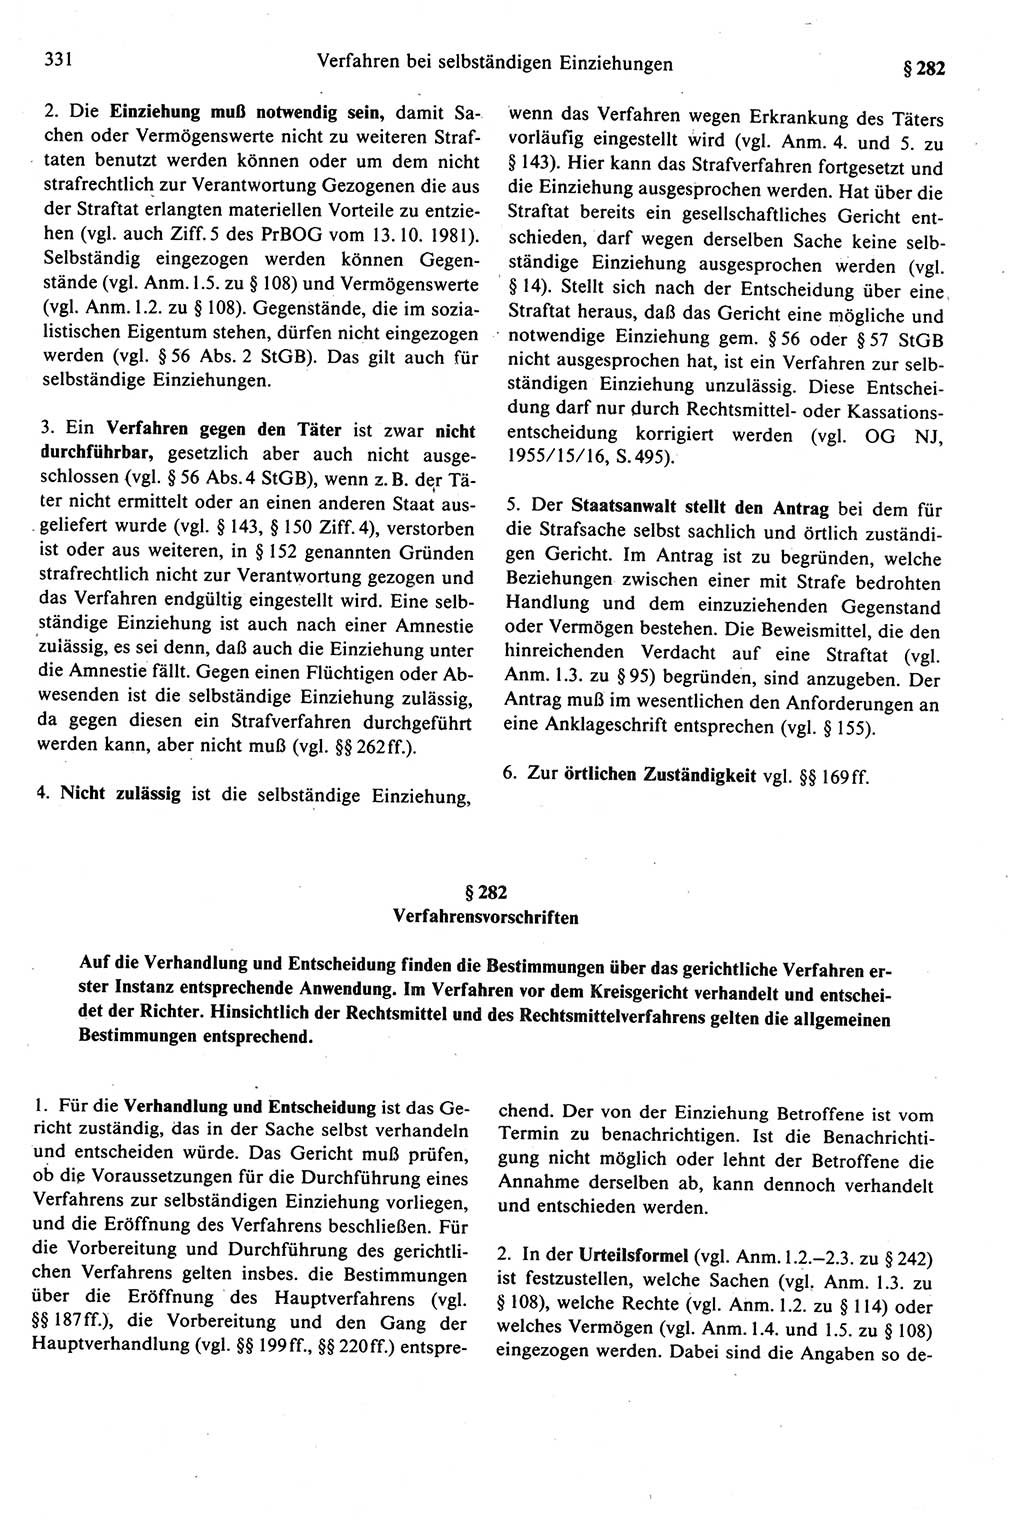 Strafprozeßrecht der DDR (Deutsche Demokratische Republik), Kommentar zur Strafprozeßordnung (StPO) 1989, Seite 331 (Strafprozeßr. DDR Komm. StPO 1989, S. 331)